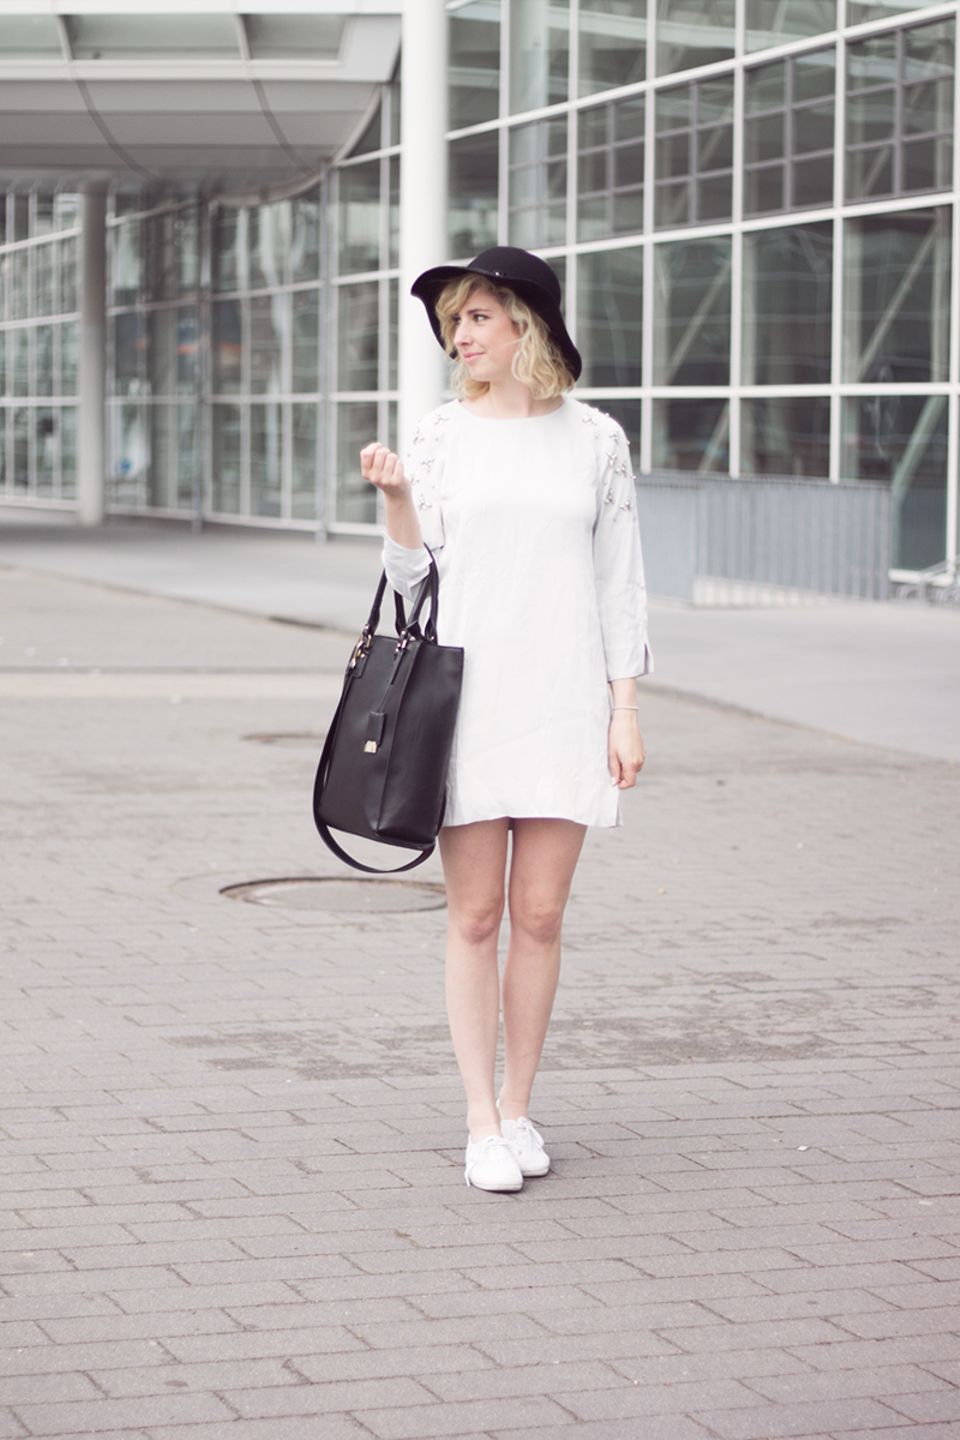 Sängerin und Mode-BloggerinJoleena setzt im Sommer auf große Hüte, die perfekt vor der Sonne schützen und ein stylisches Acccessoire zu jedem Outfit abgeben.